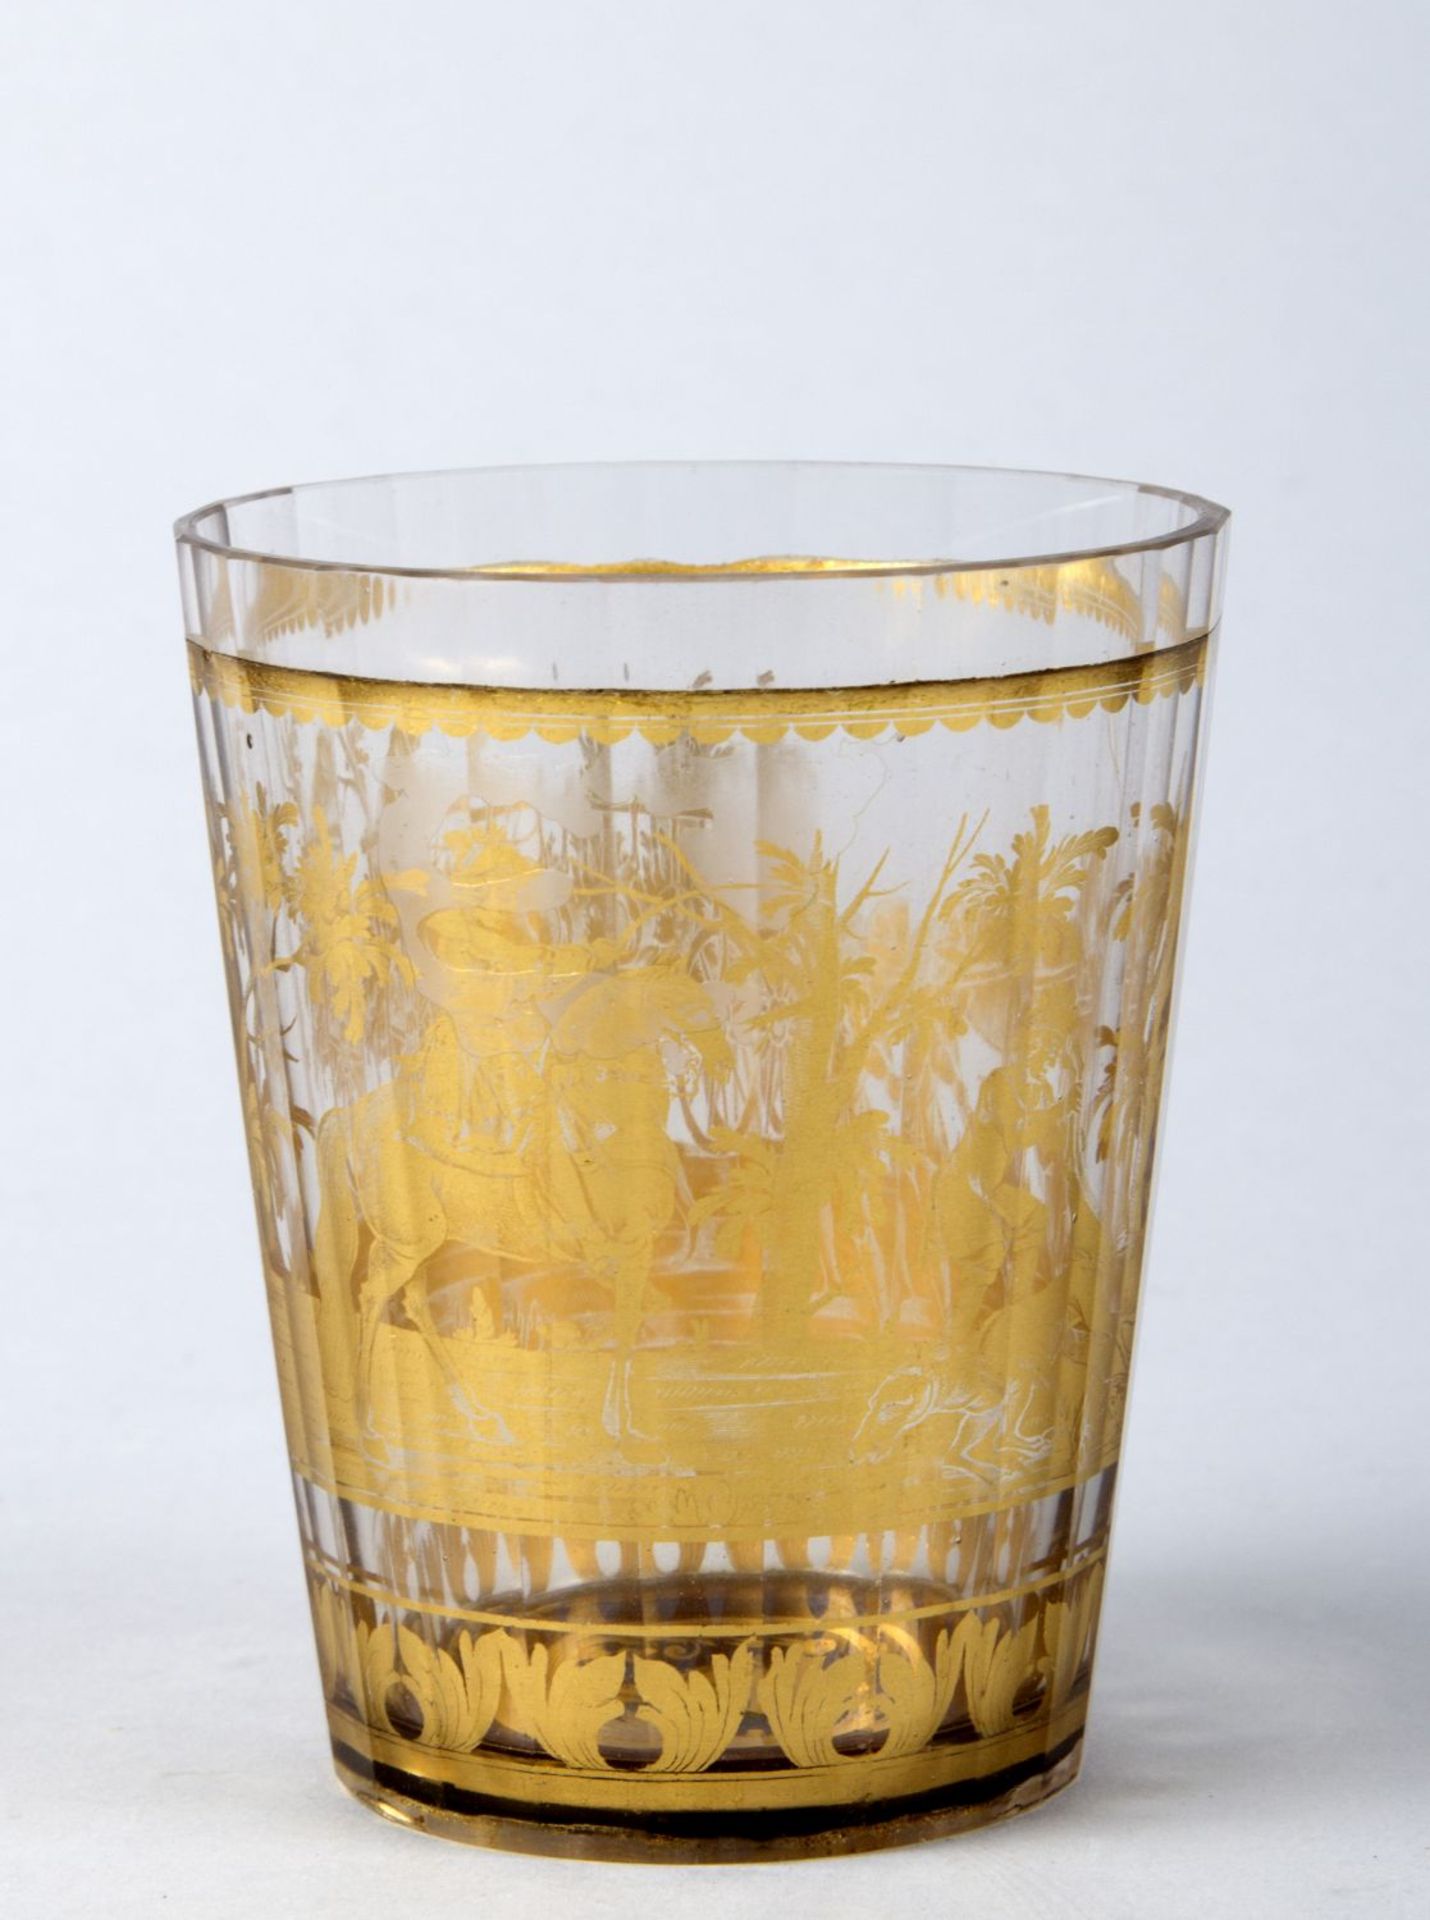 Zwischengold-BecherFarbloses, leicht graustichiges Glas. Konische Wandung, vielfach facettiert. In